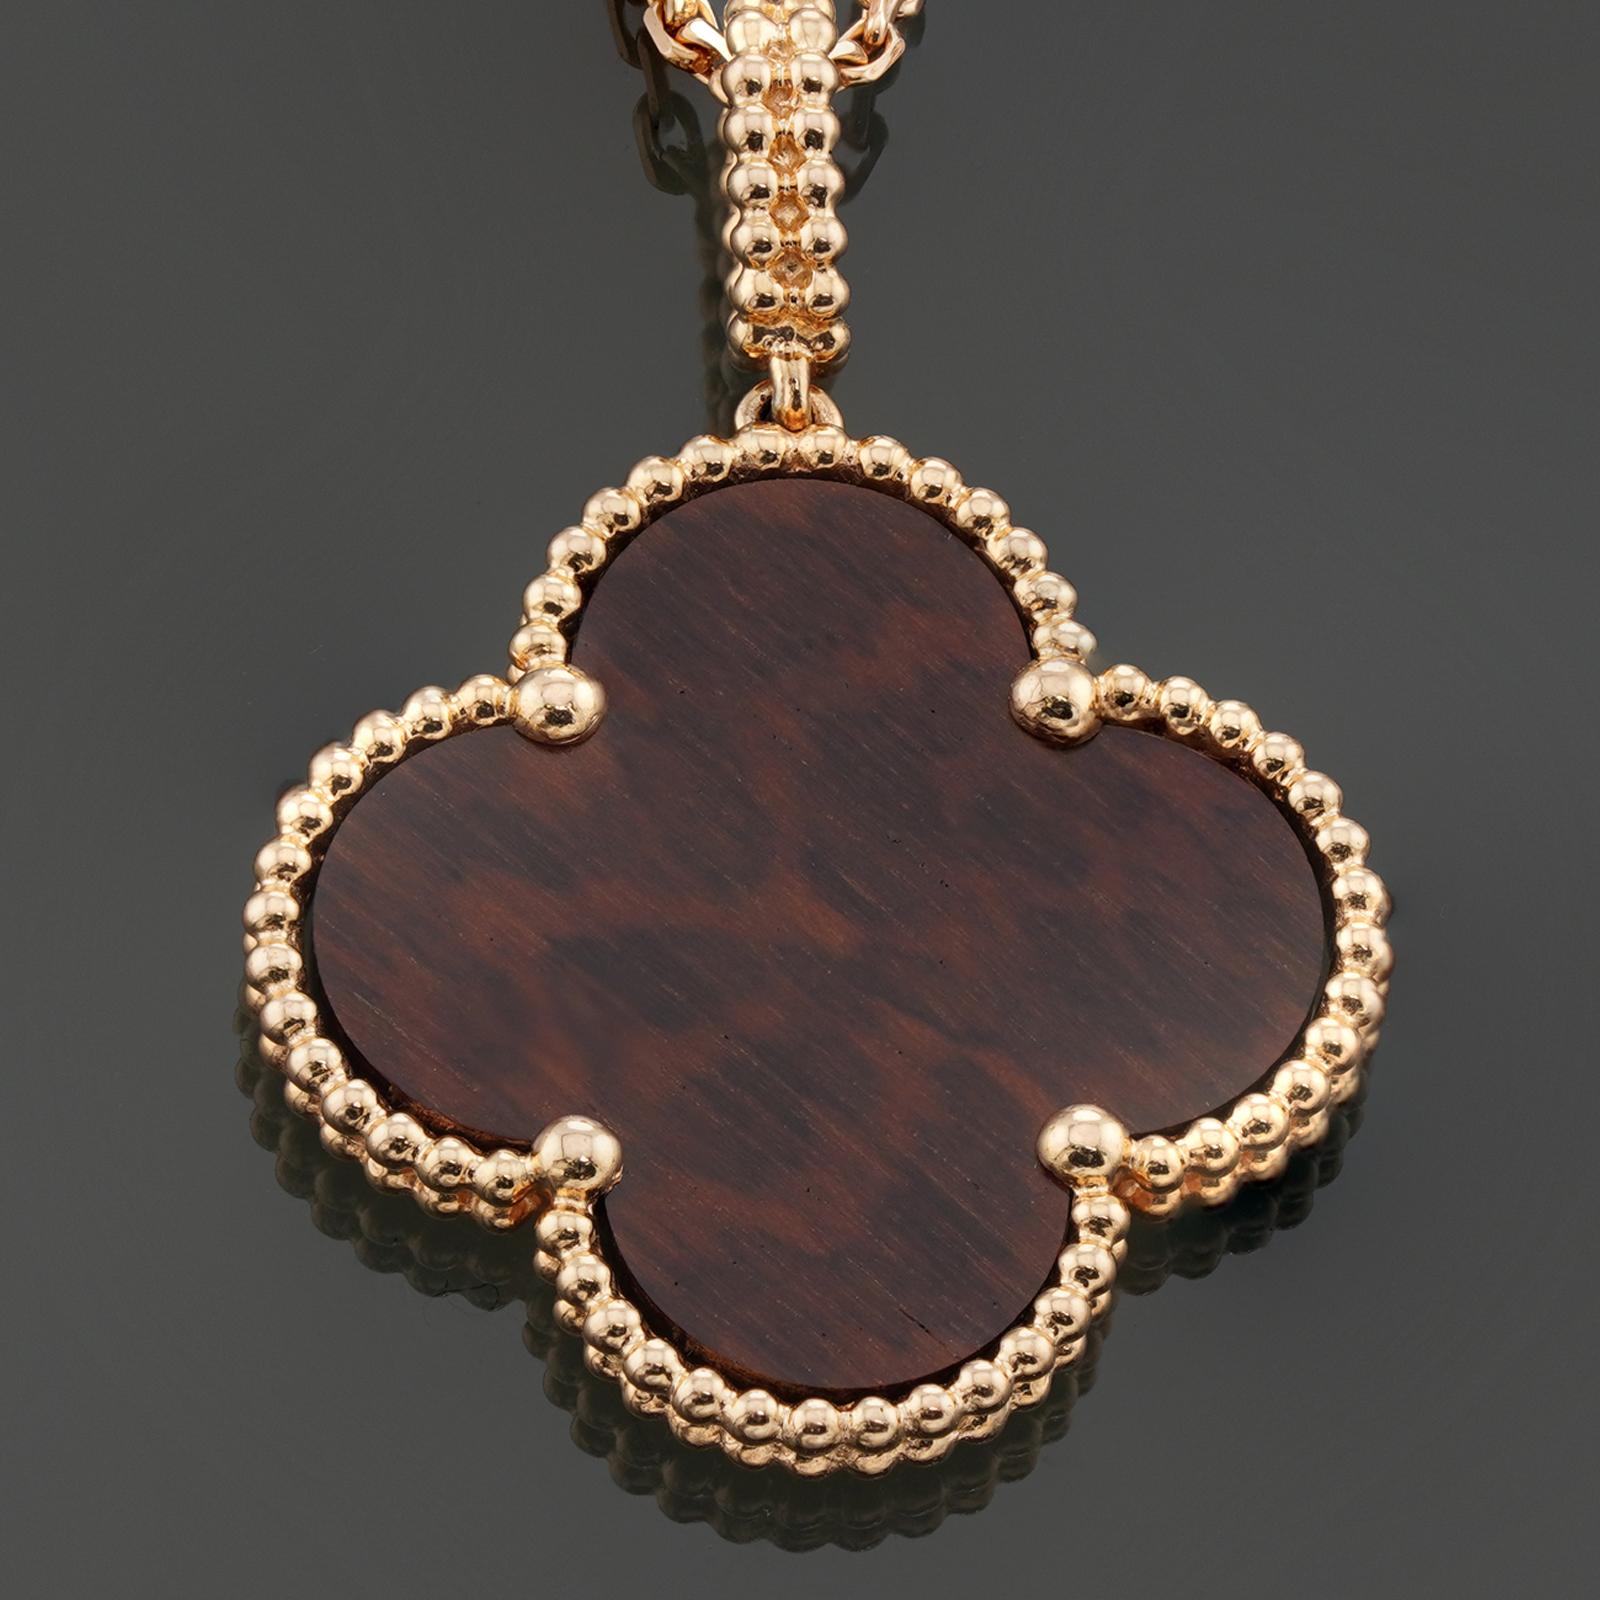 Diese wunderschöne Halskette von Van Cleef & Arpels ist aus 18 Karat Roségold gefertigt und mit einem Anhänger aus Buchstabenholz versehen. Die Kollektion Magic Alhambra ist inspiriert von vierblättrigen Glückskleeblättern und den geschwungenen